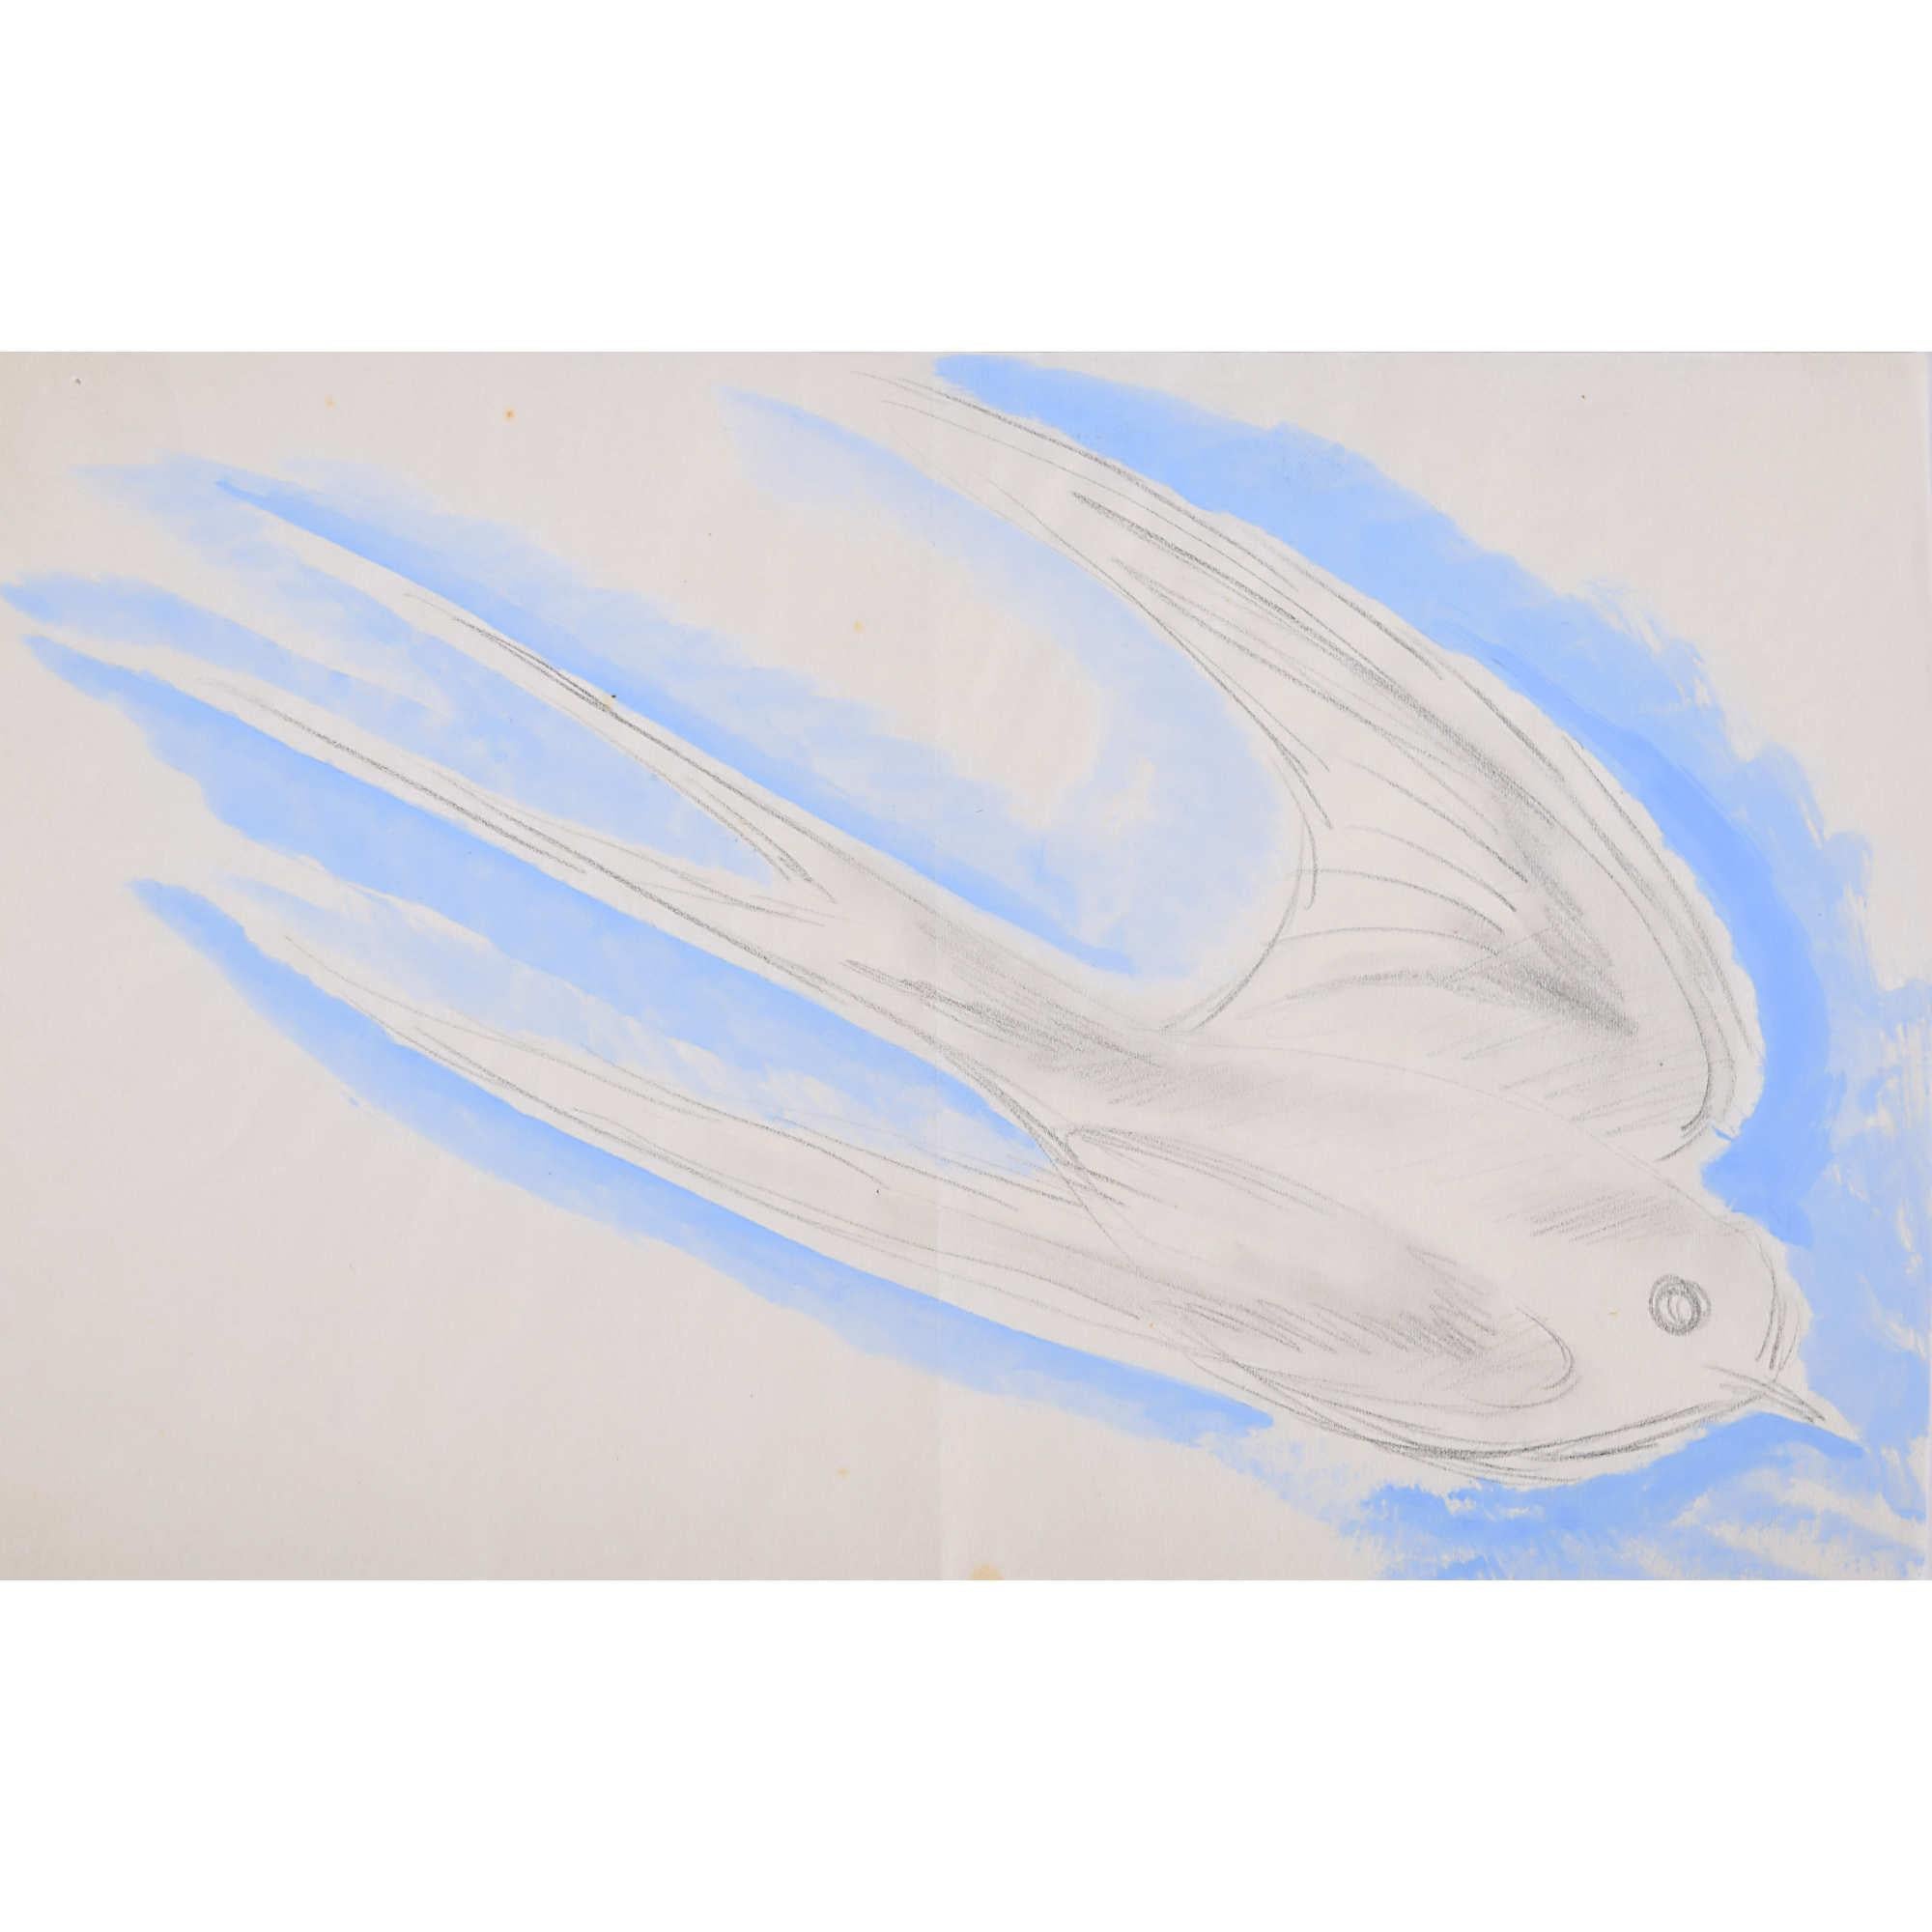 Clifford Ellis Swallow watercolour Modern British Art Wildlife Bird Migration